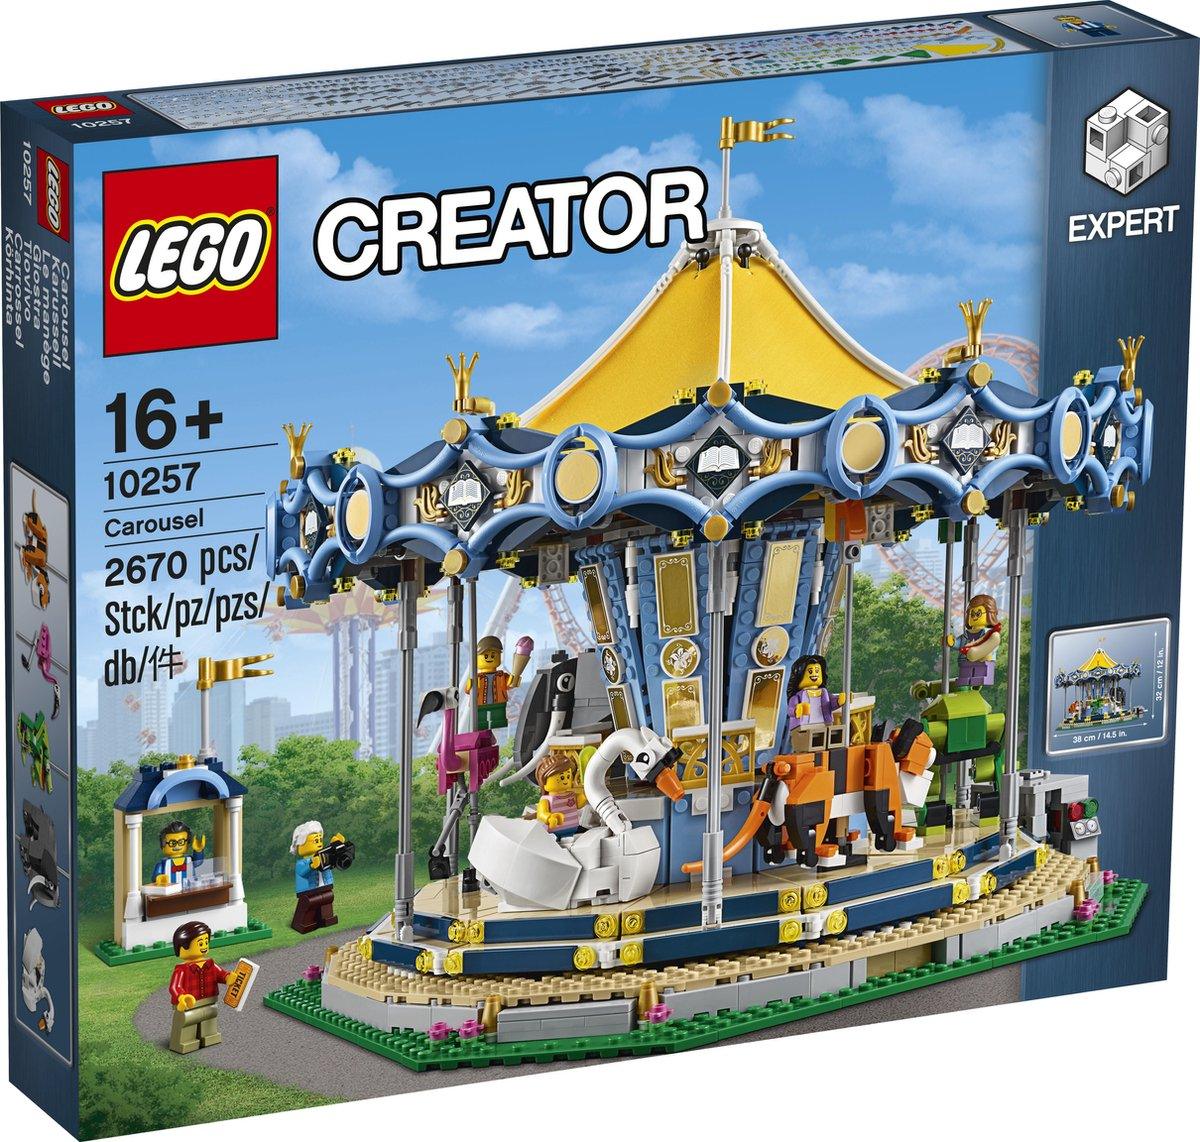 LEGO Draaimolen van de kermis 10257 Creator Expert LEGO CREATOR EXPERT @ 2TTOYS LEGO €. 299.99